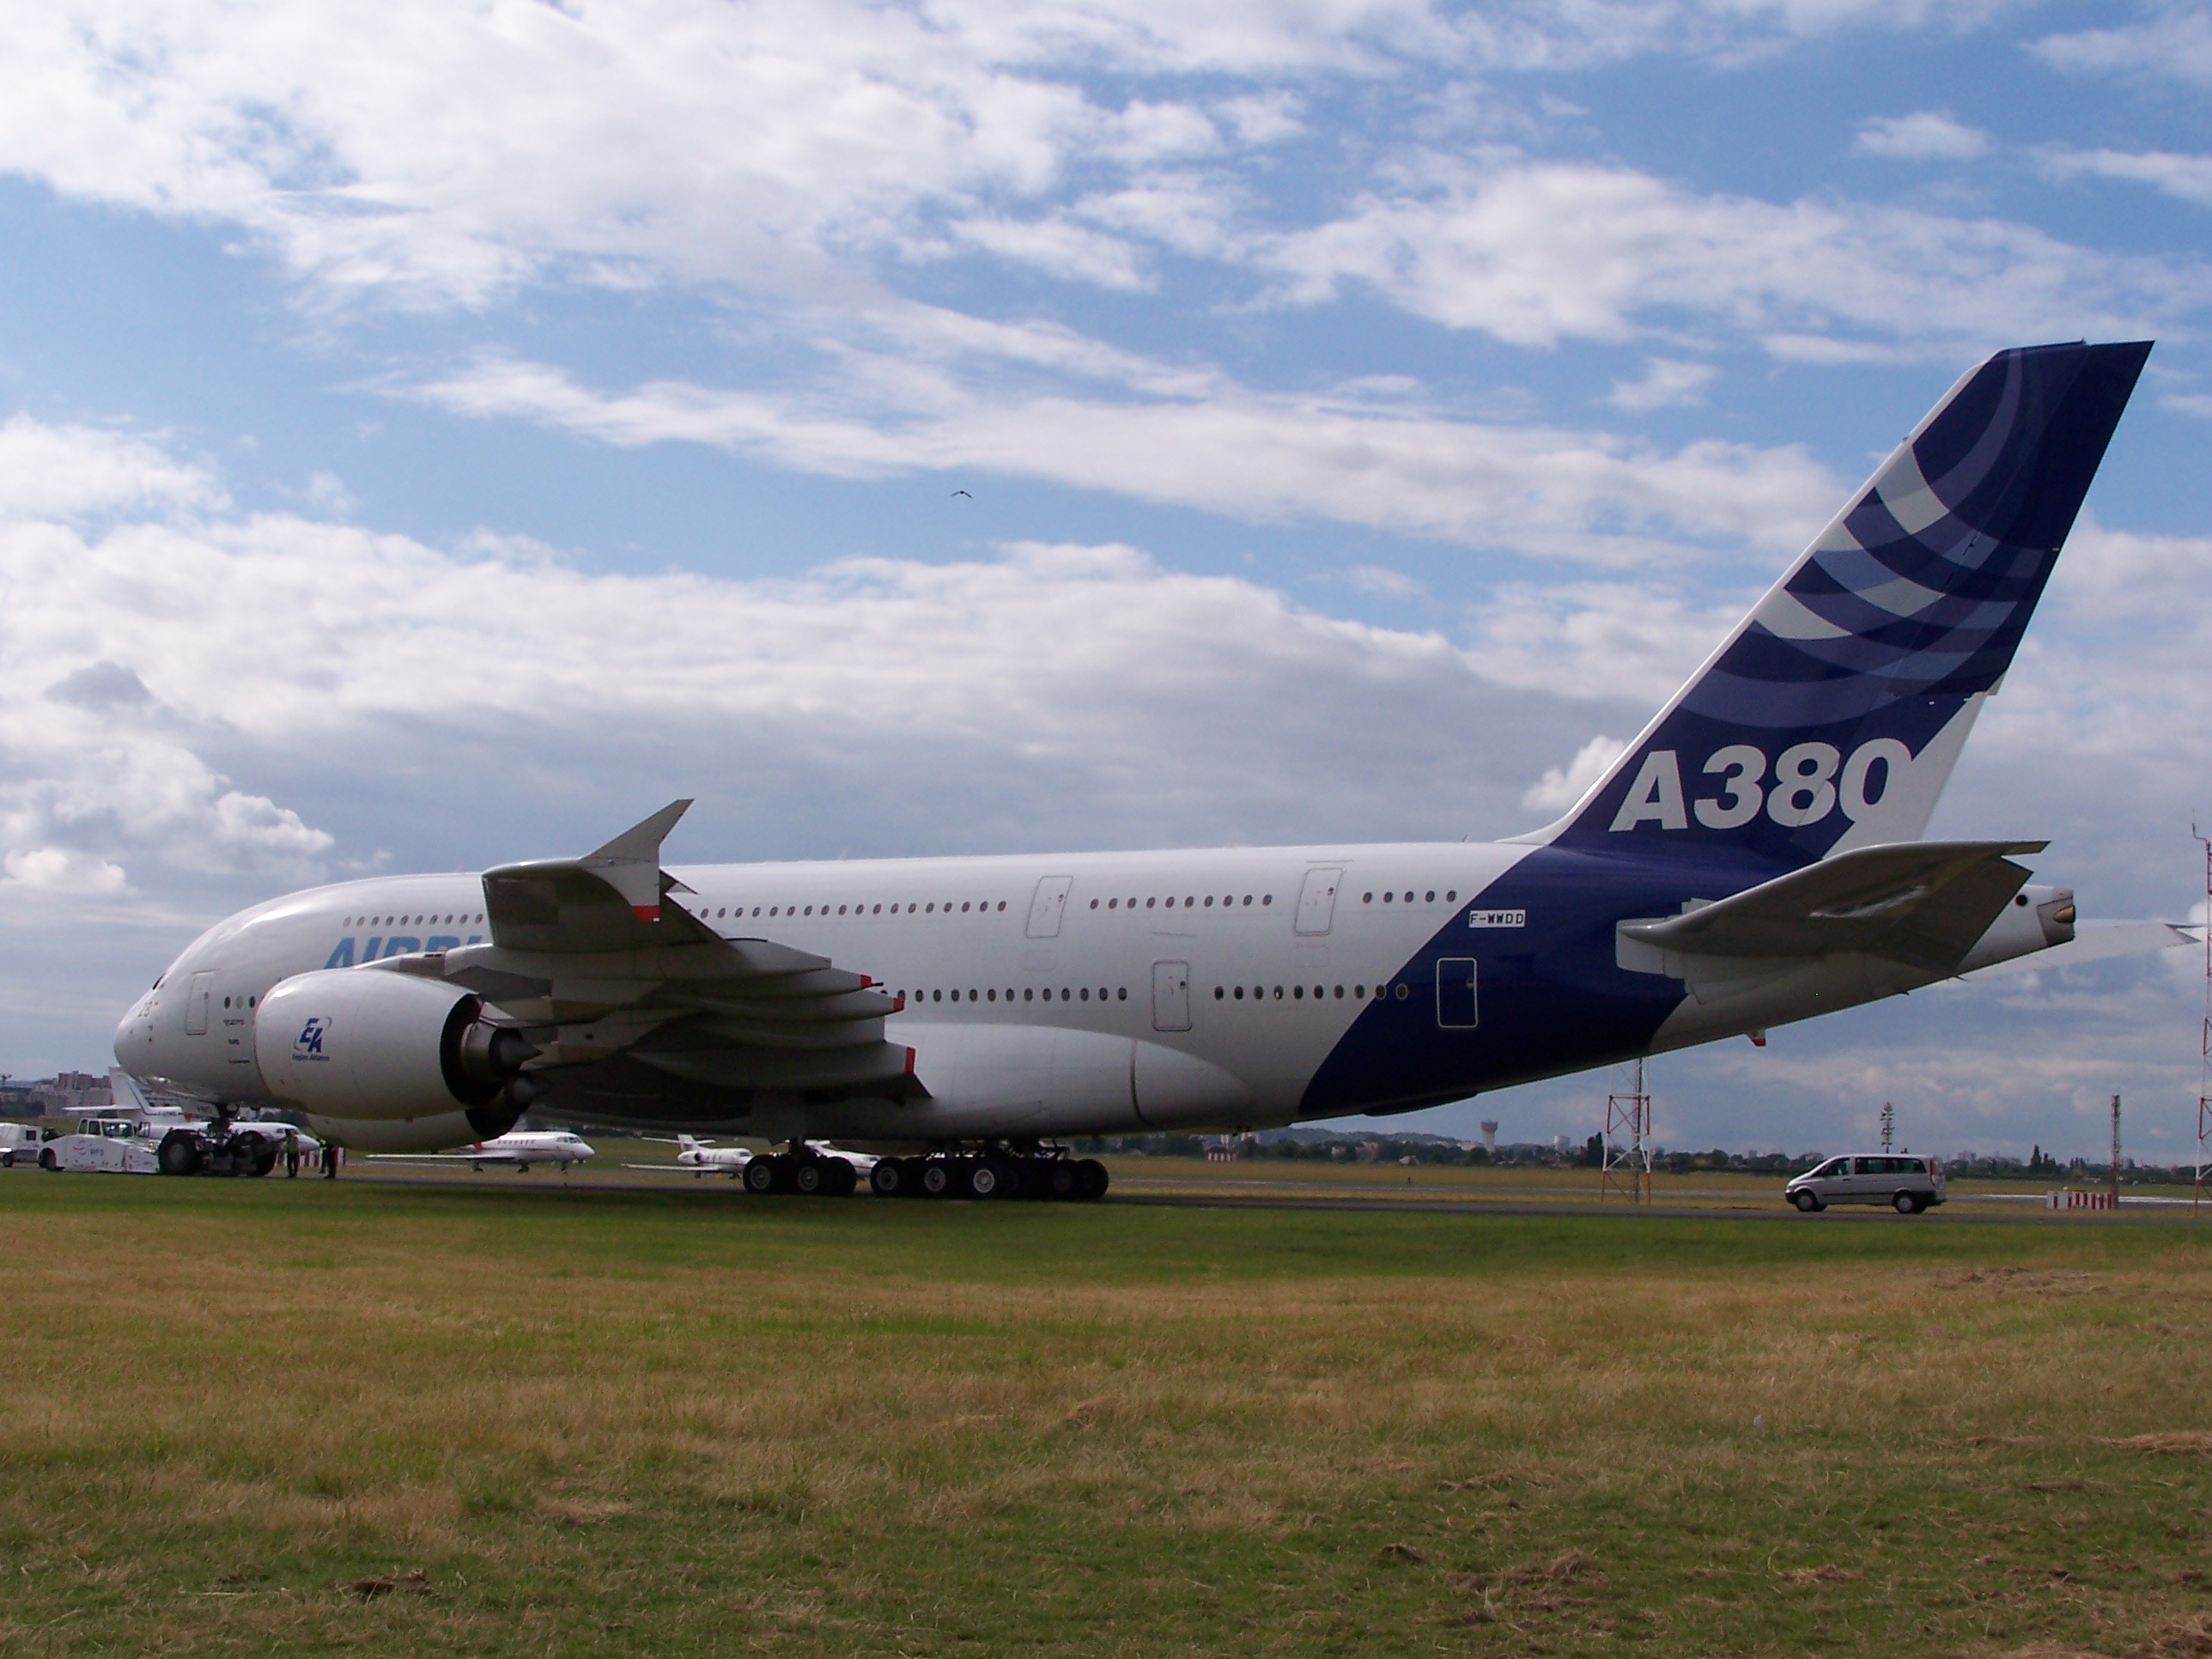 A380 au sol